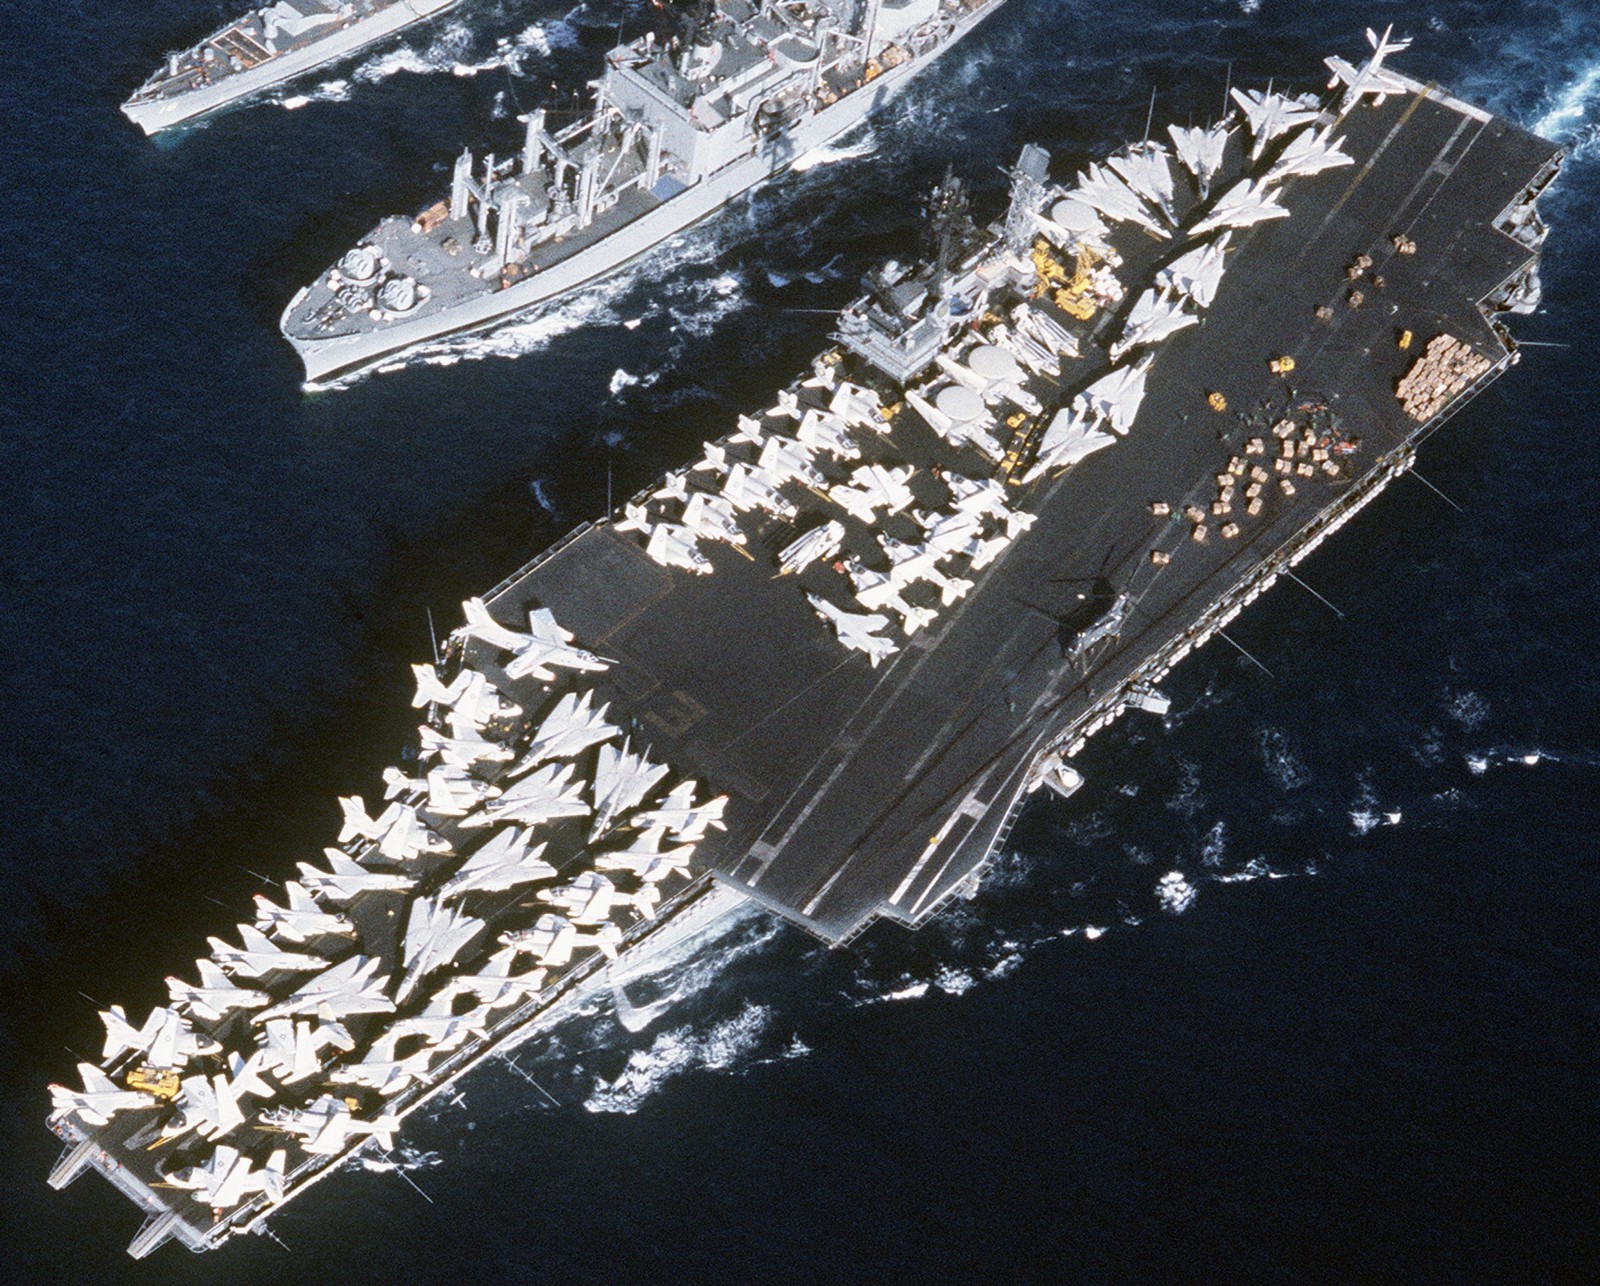 cv-64 uss constellation kitty hawk class aircraft carrier air wing cvw-9 us navy 54